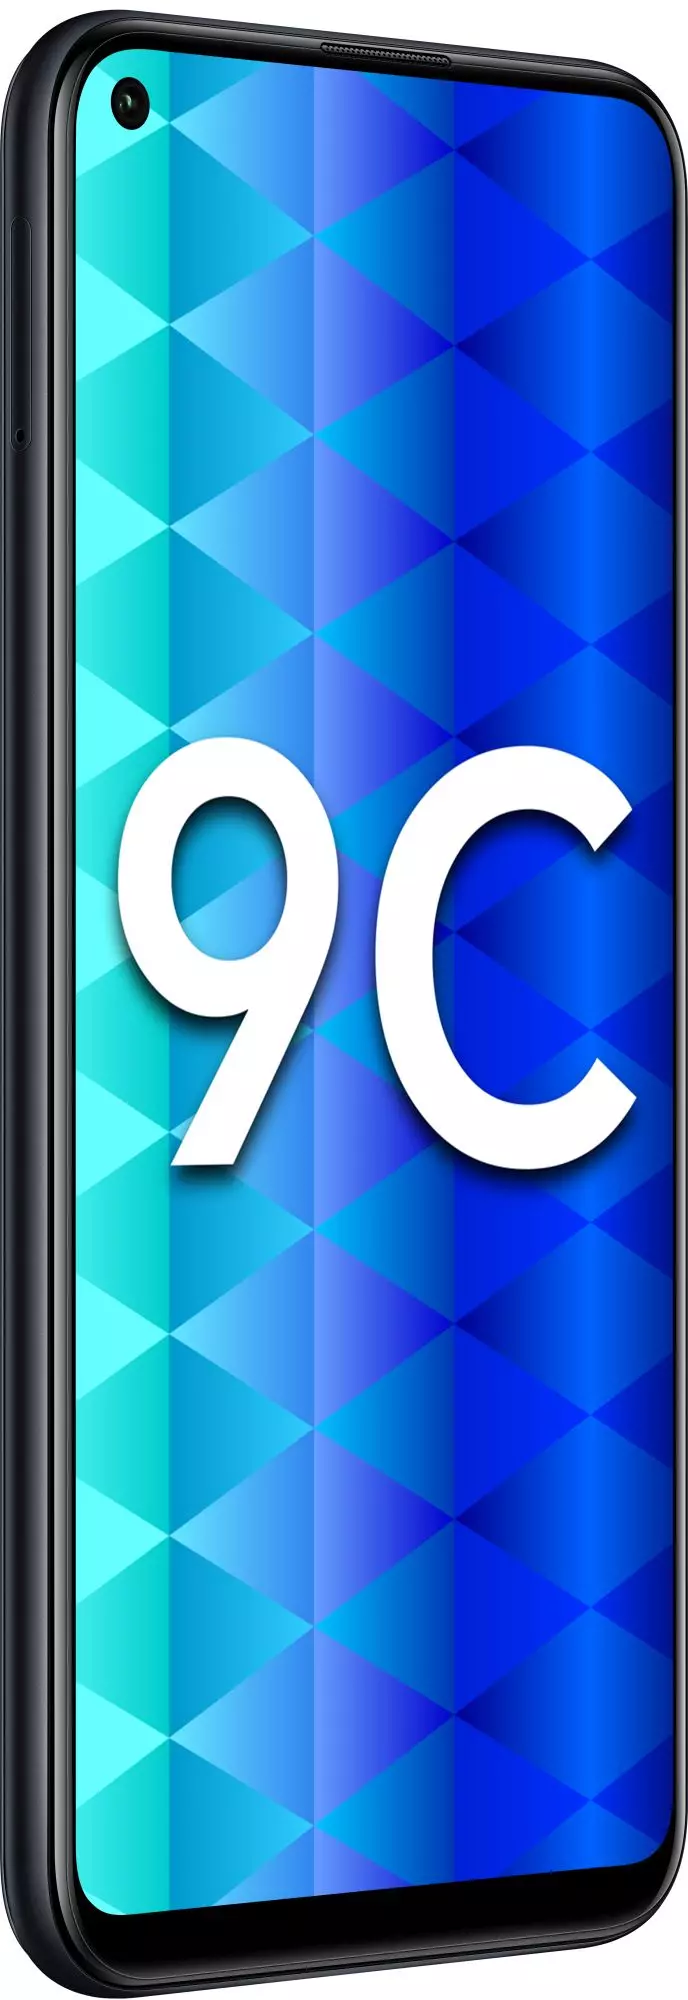 Смартфон Honor 9С 4/64 ГБ Черный в Челябинске купить по недорогим ценам с доставкой